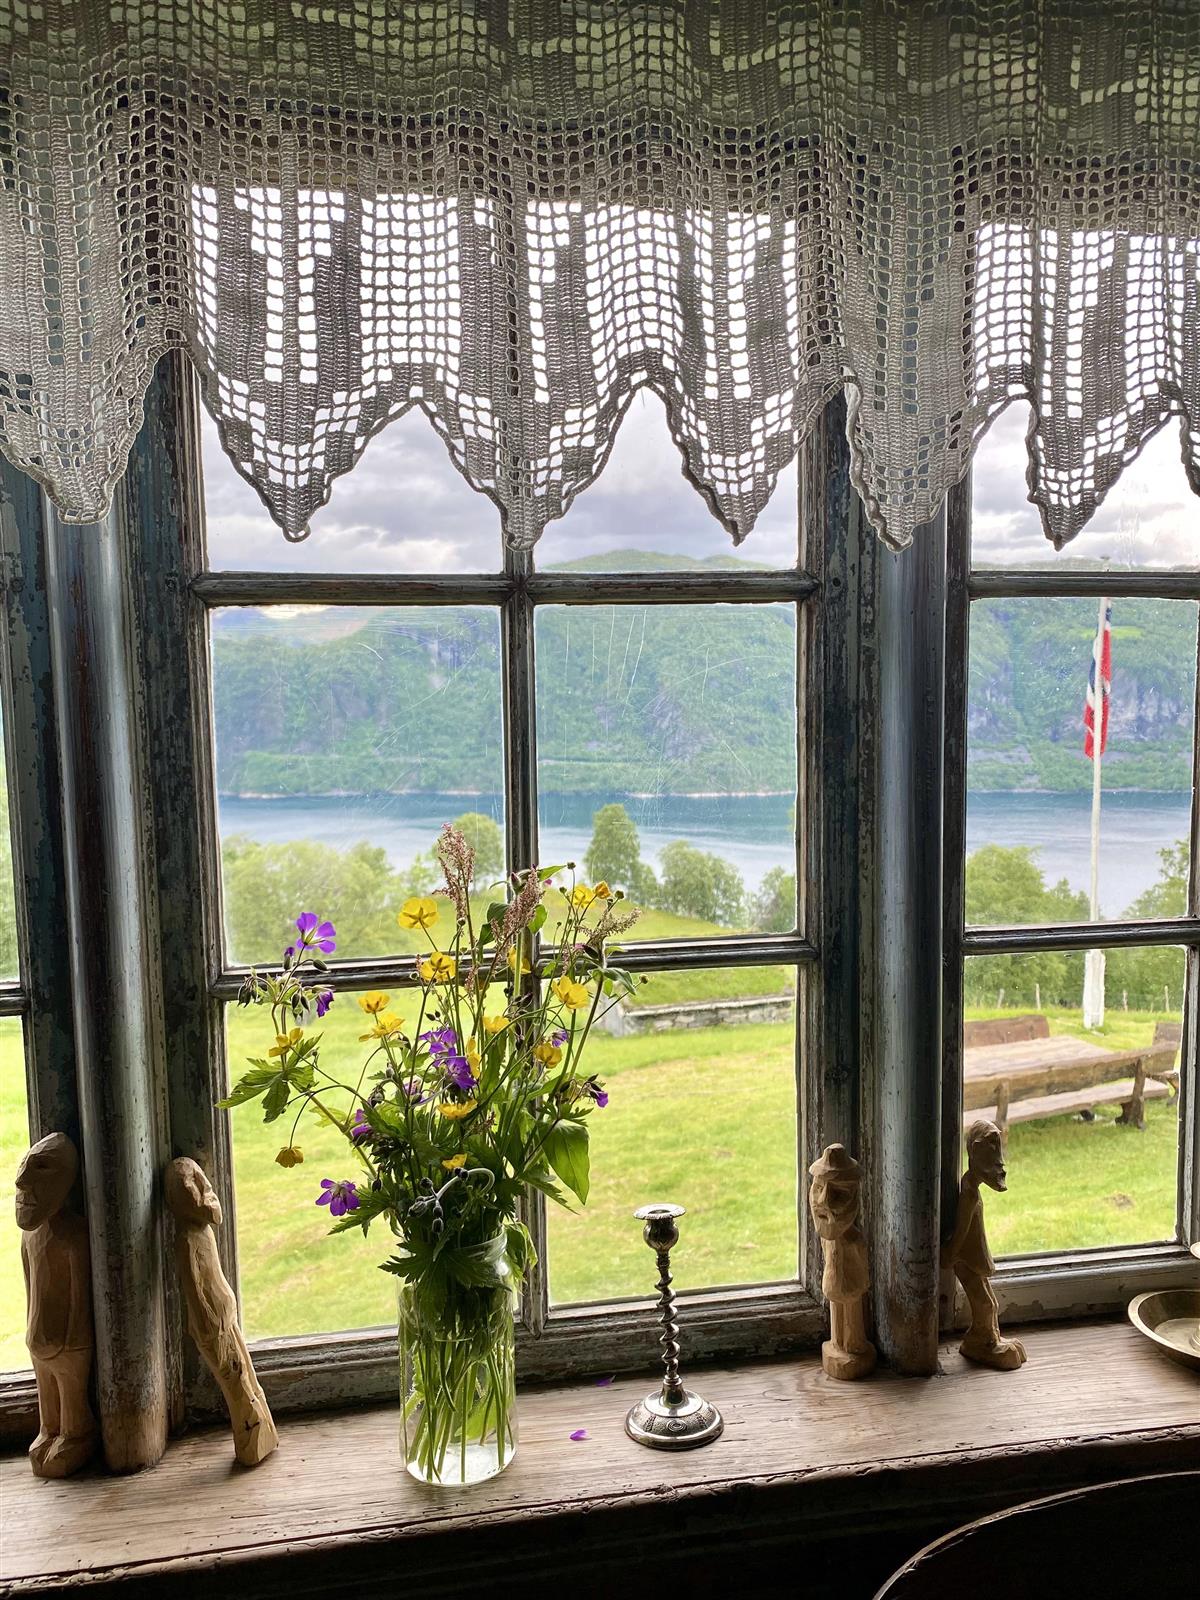 Eit gammalt vindu pynta med markblomster og trefigurar. Ute er flagget heist og det er utsikt til fjord og fjell. - Klikk for stort bilete